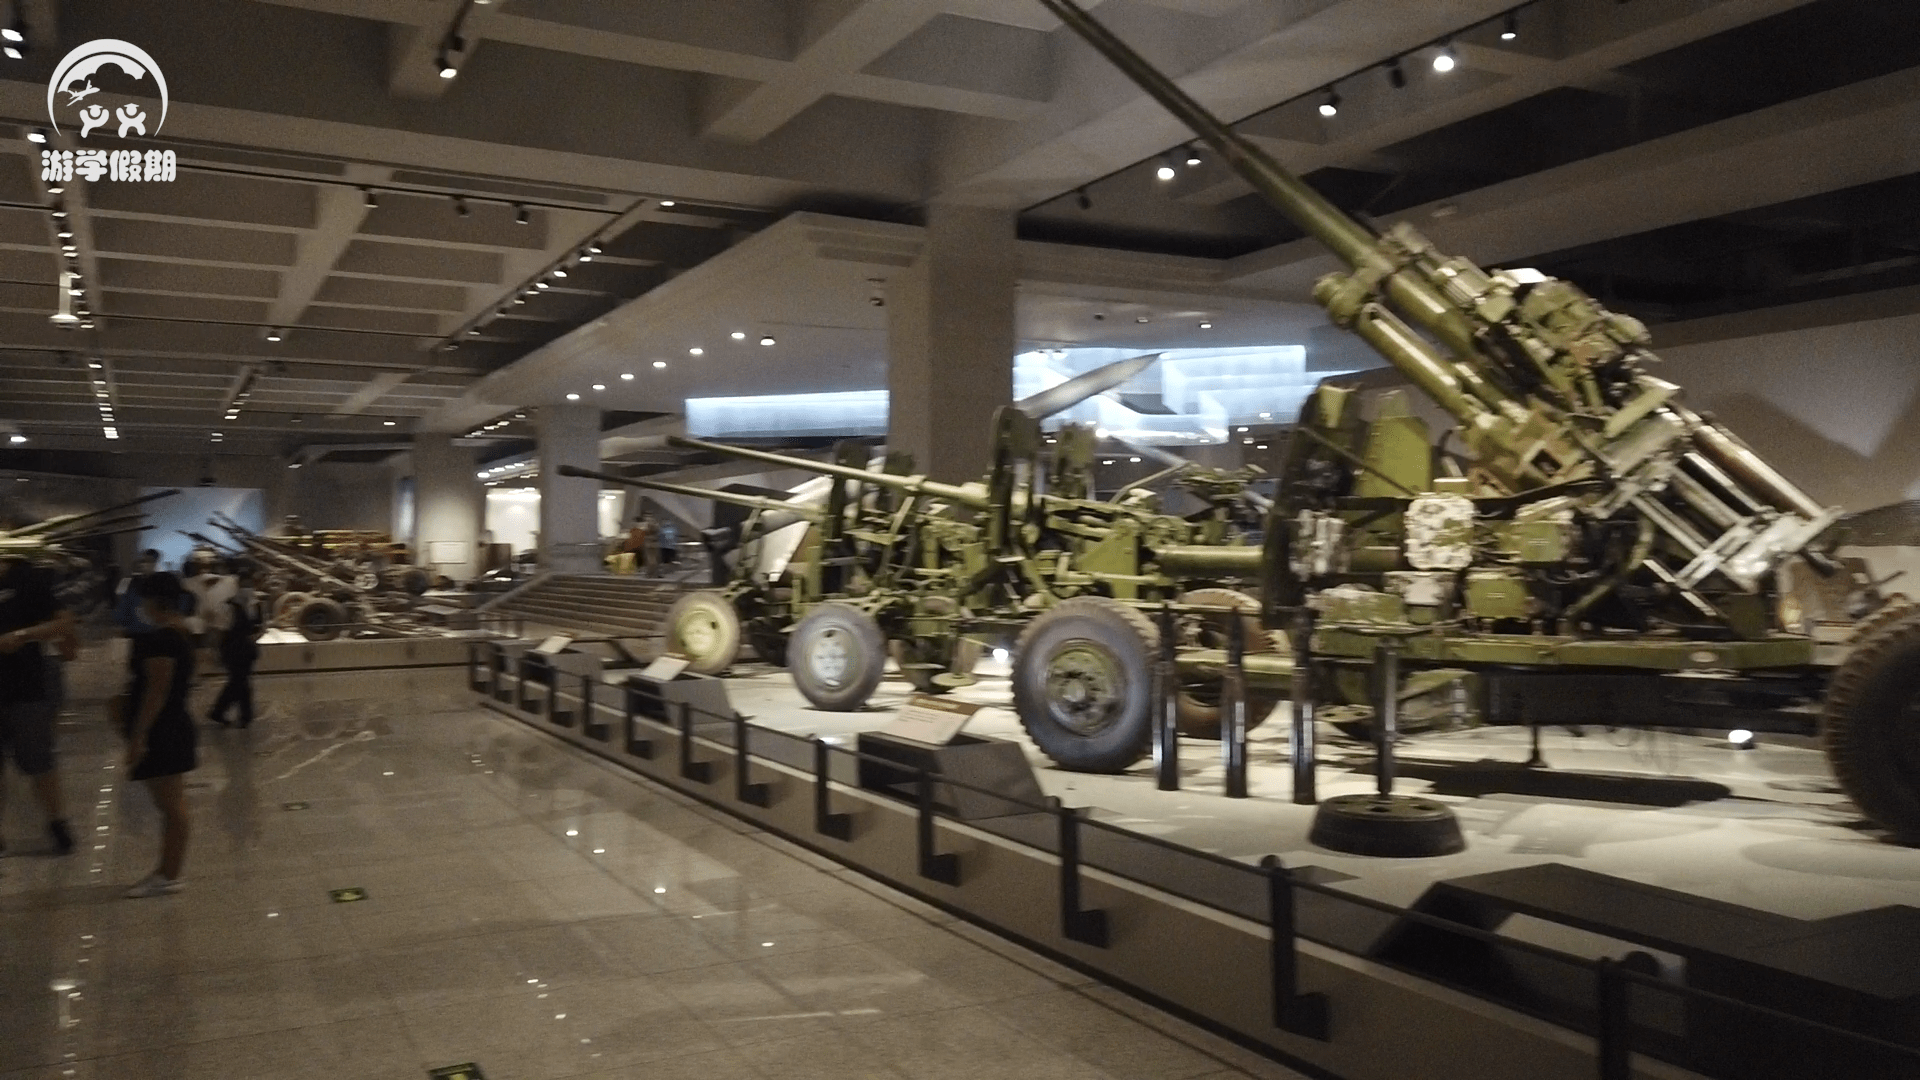 研学旅行云课堂带你走进中国军事博物馆了解国防科技探秘火炮之源铸就